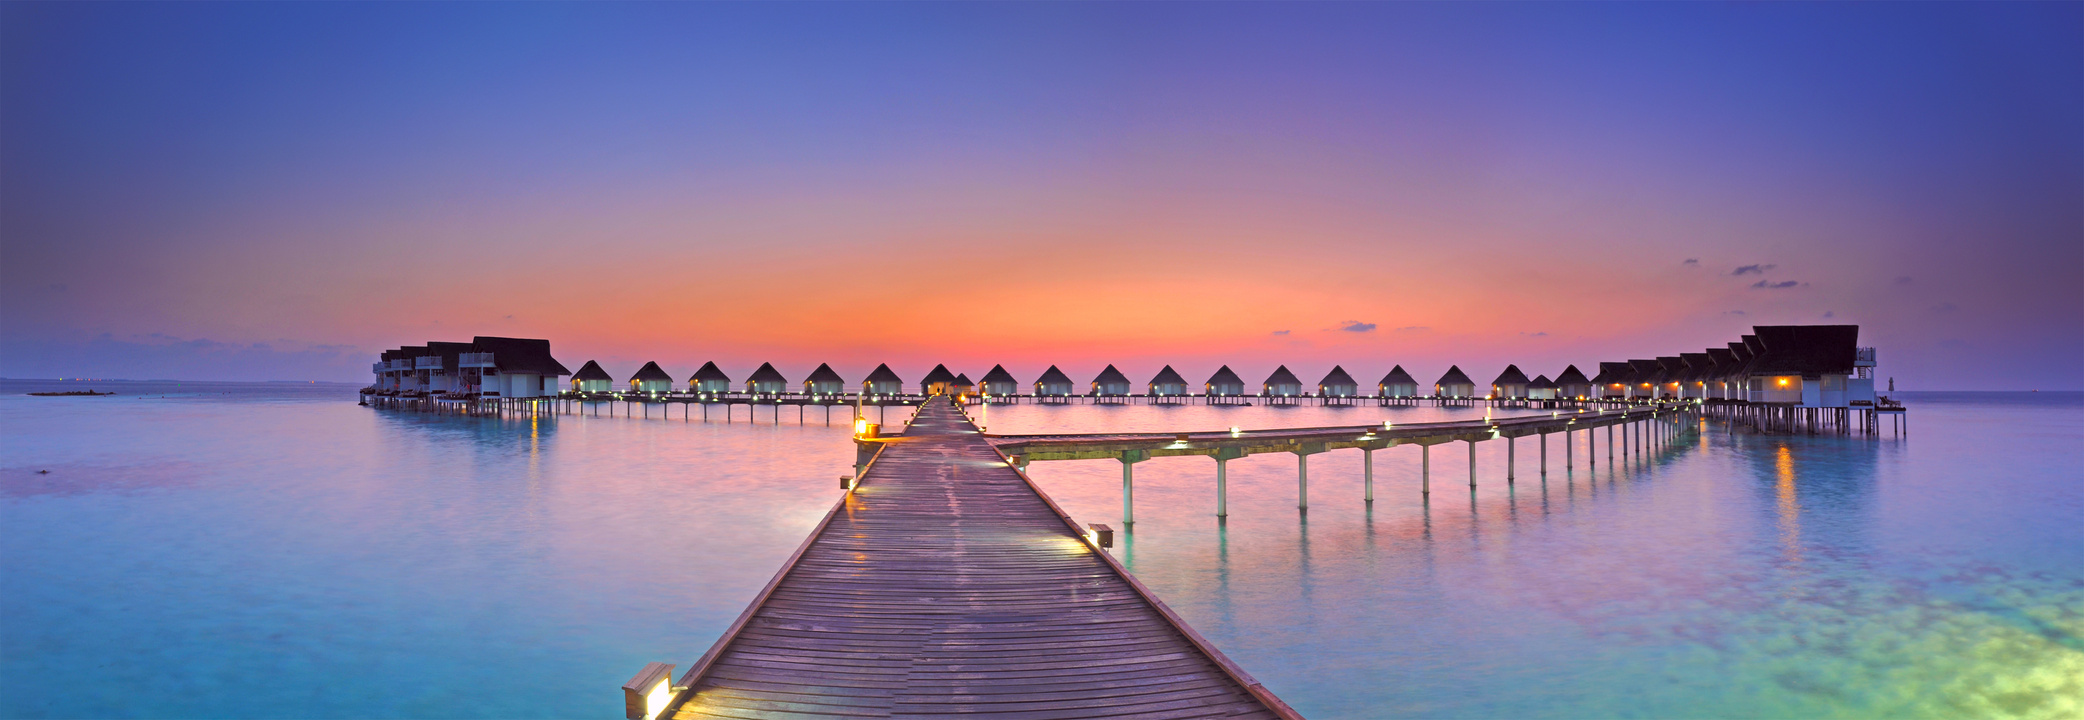 Maldives sunset panorama